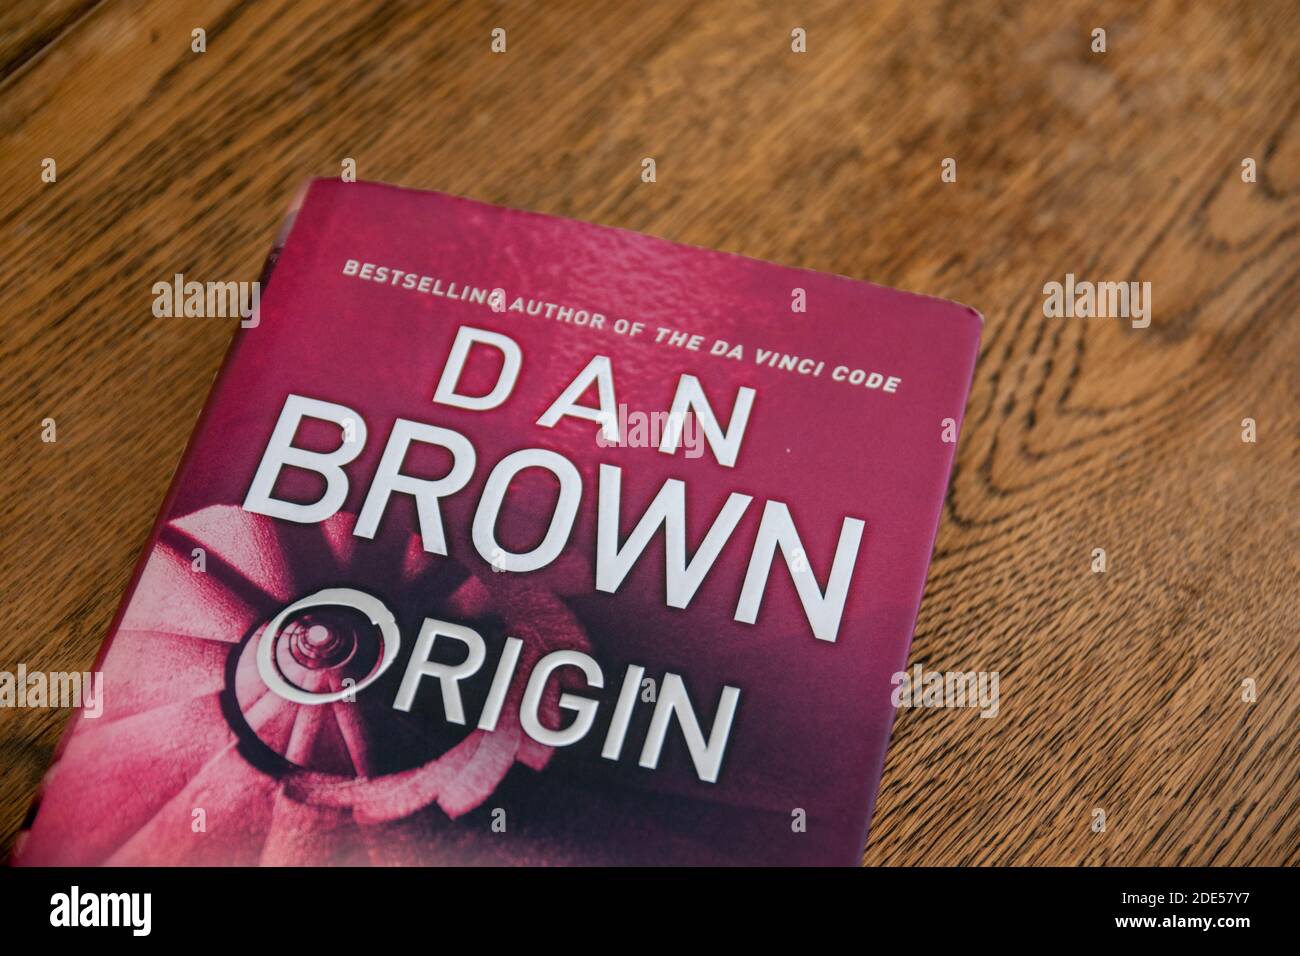 Dan Brown ist ein amerikanischer Autor, der vor allem für seine Thriller-Romane Robert Langdon Angels & Demons, The Da Vinci Code, The Lost Symbol, Origin bekannt ist Stockfoto